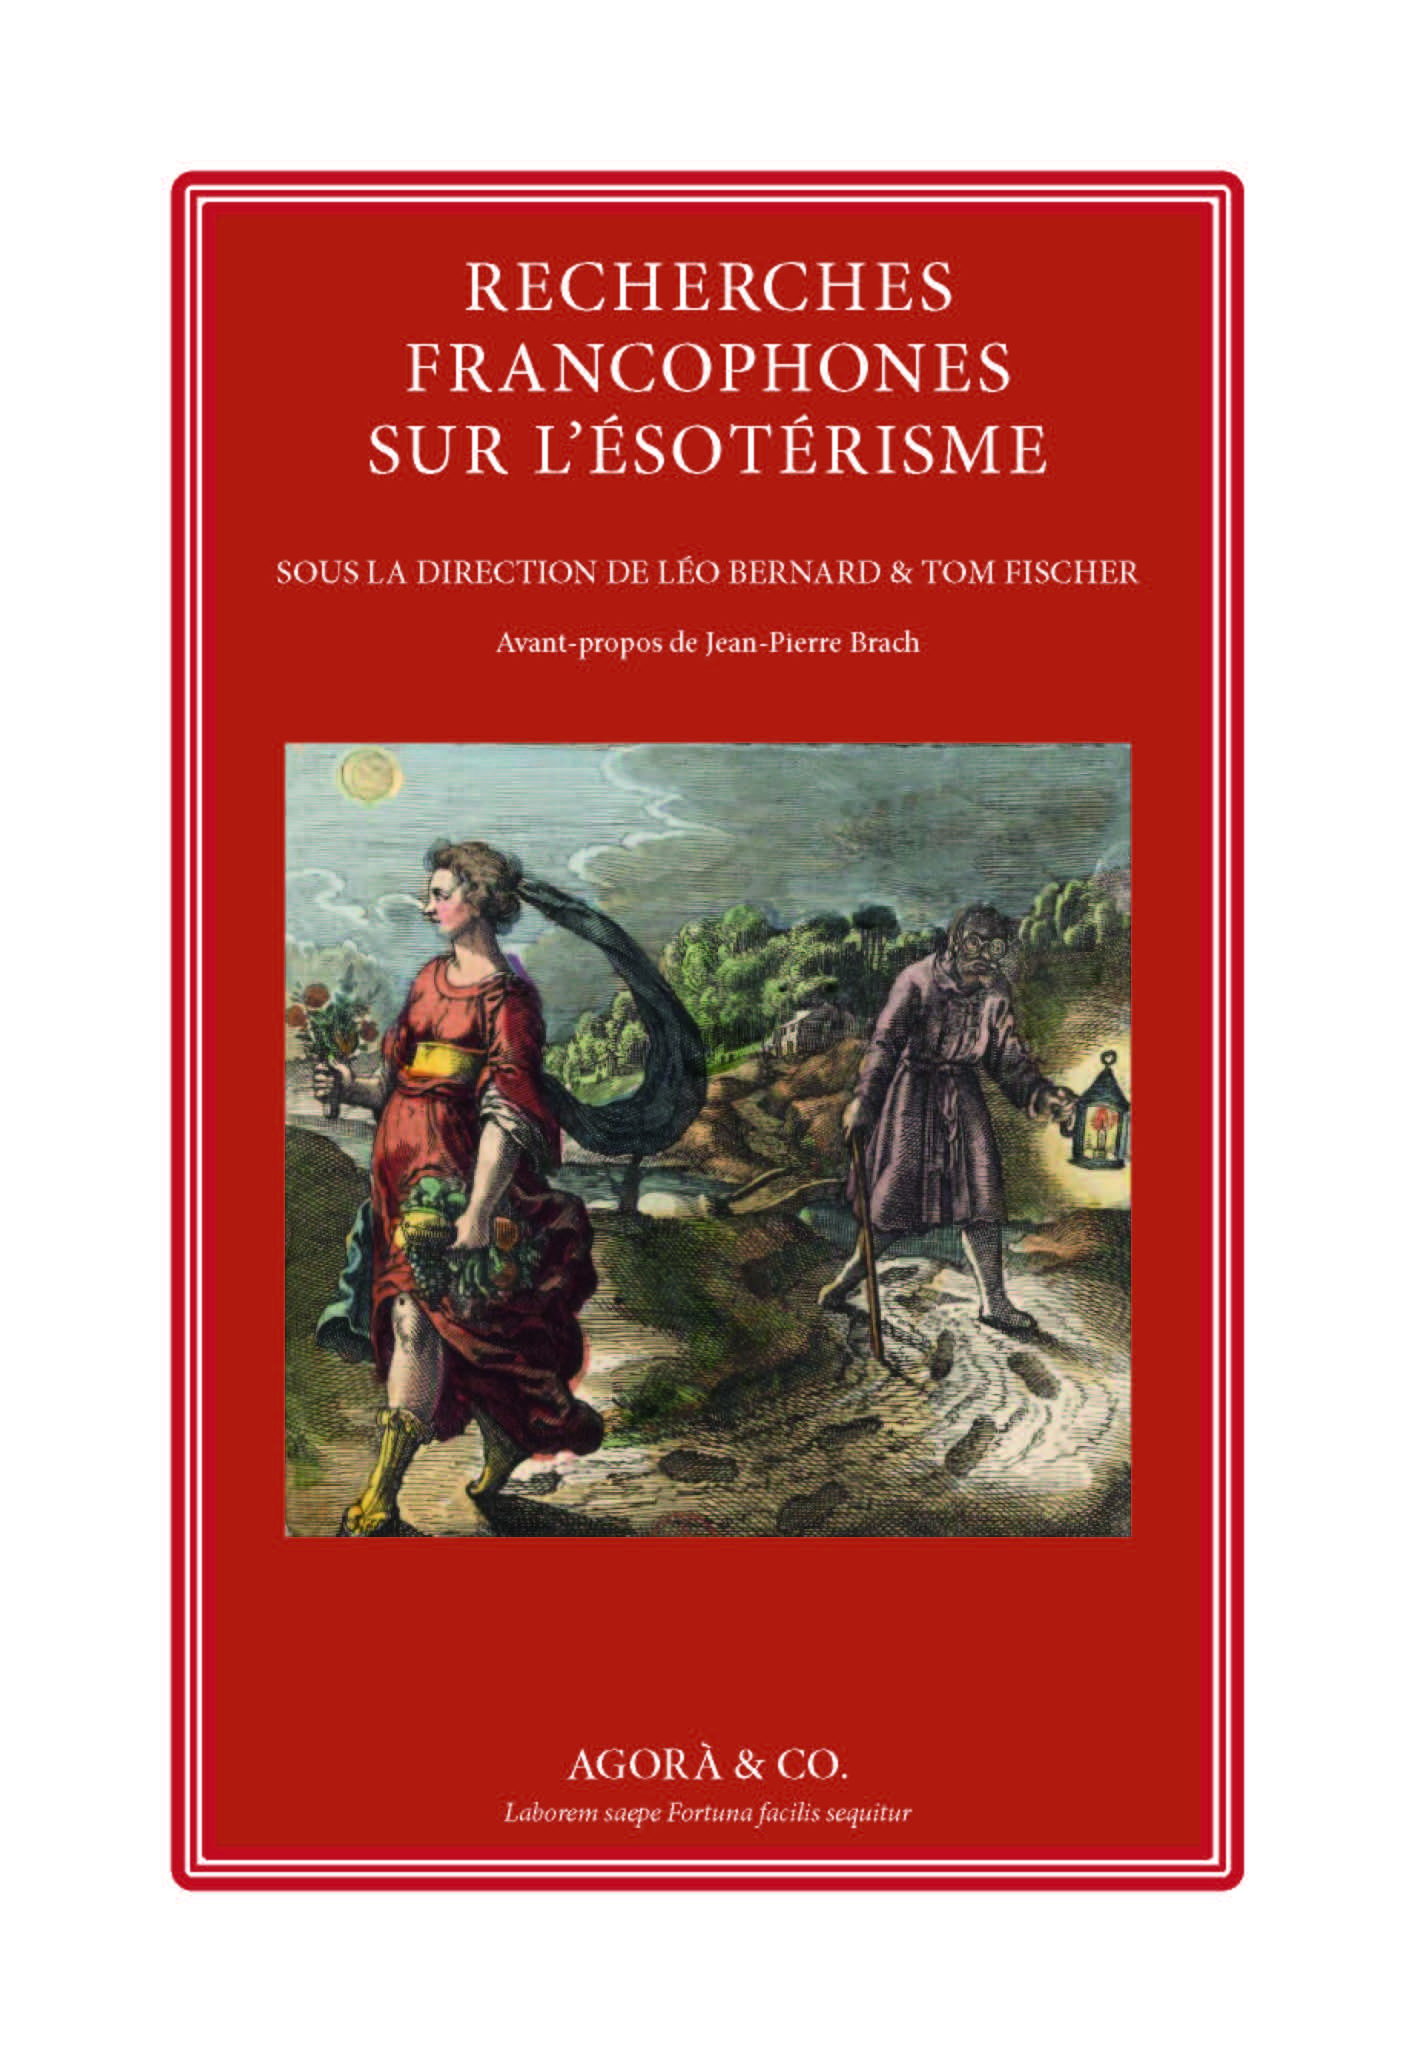 agora-edizioni-recherches-francophones-sur-l'-esoterisme-léo-bernard- tom-fischer